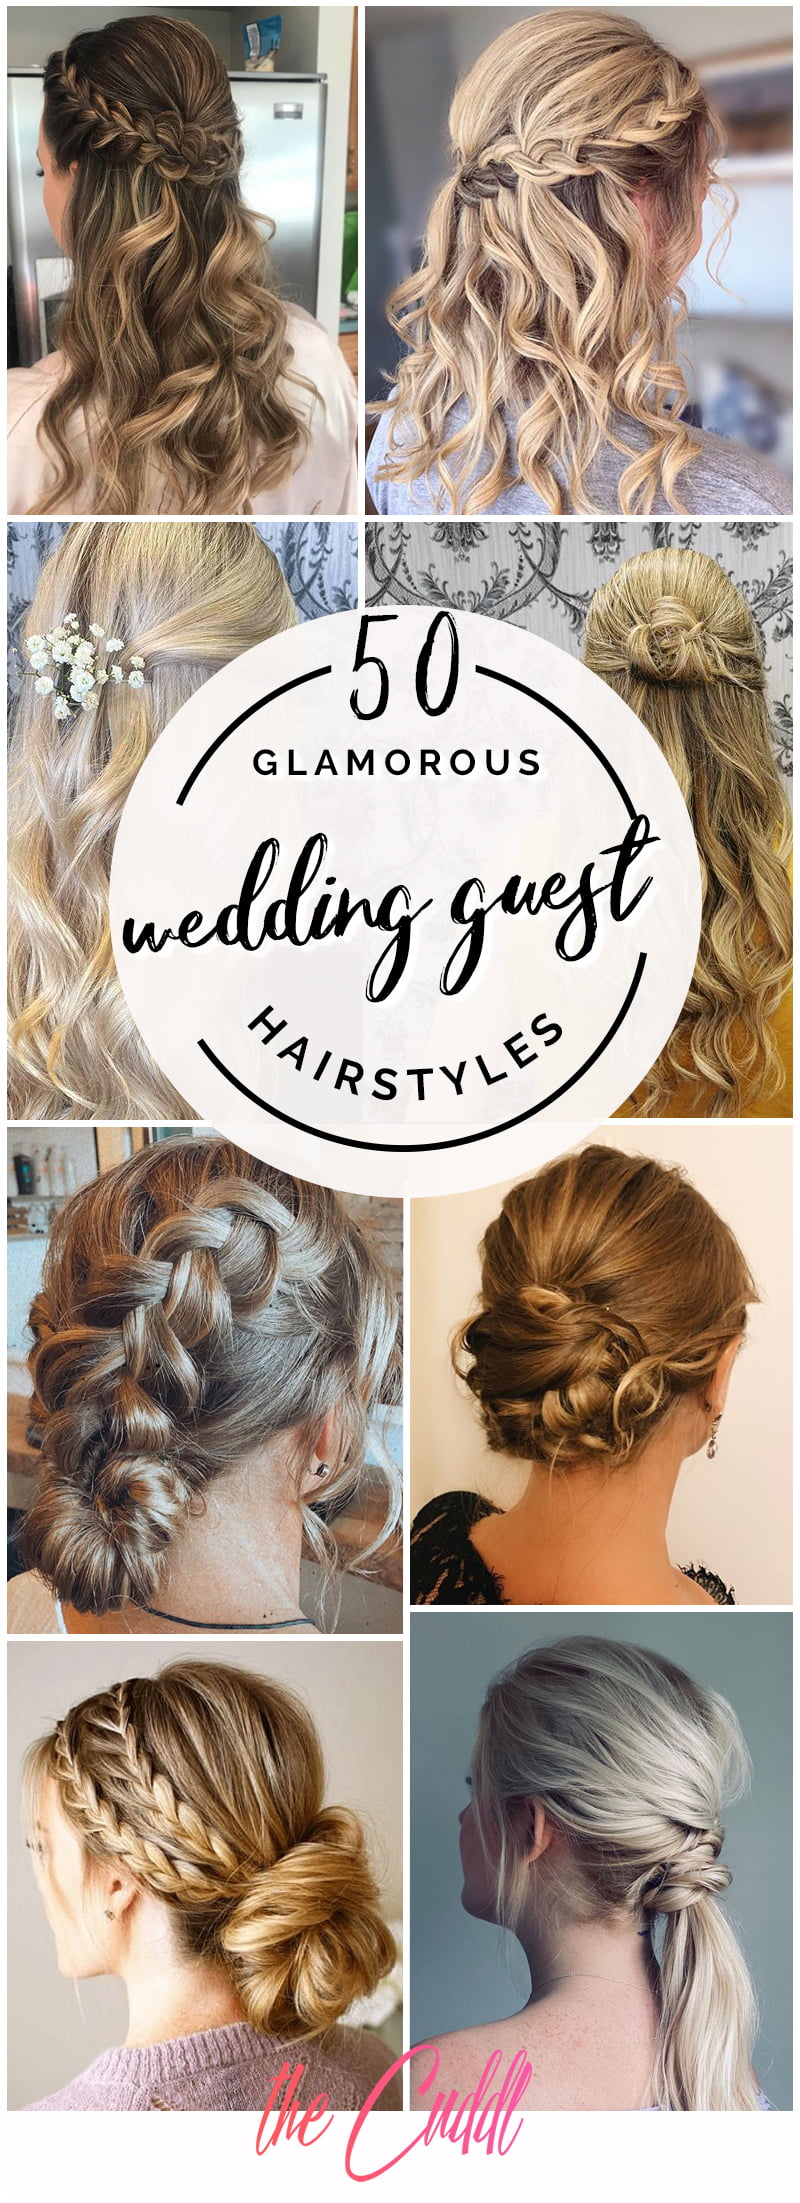 Best Wedding Guest Hairstyle Ideas